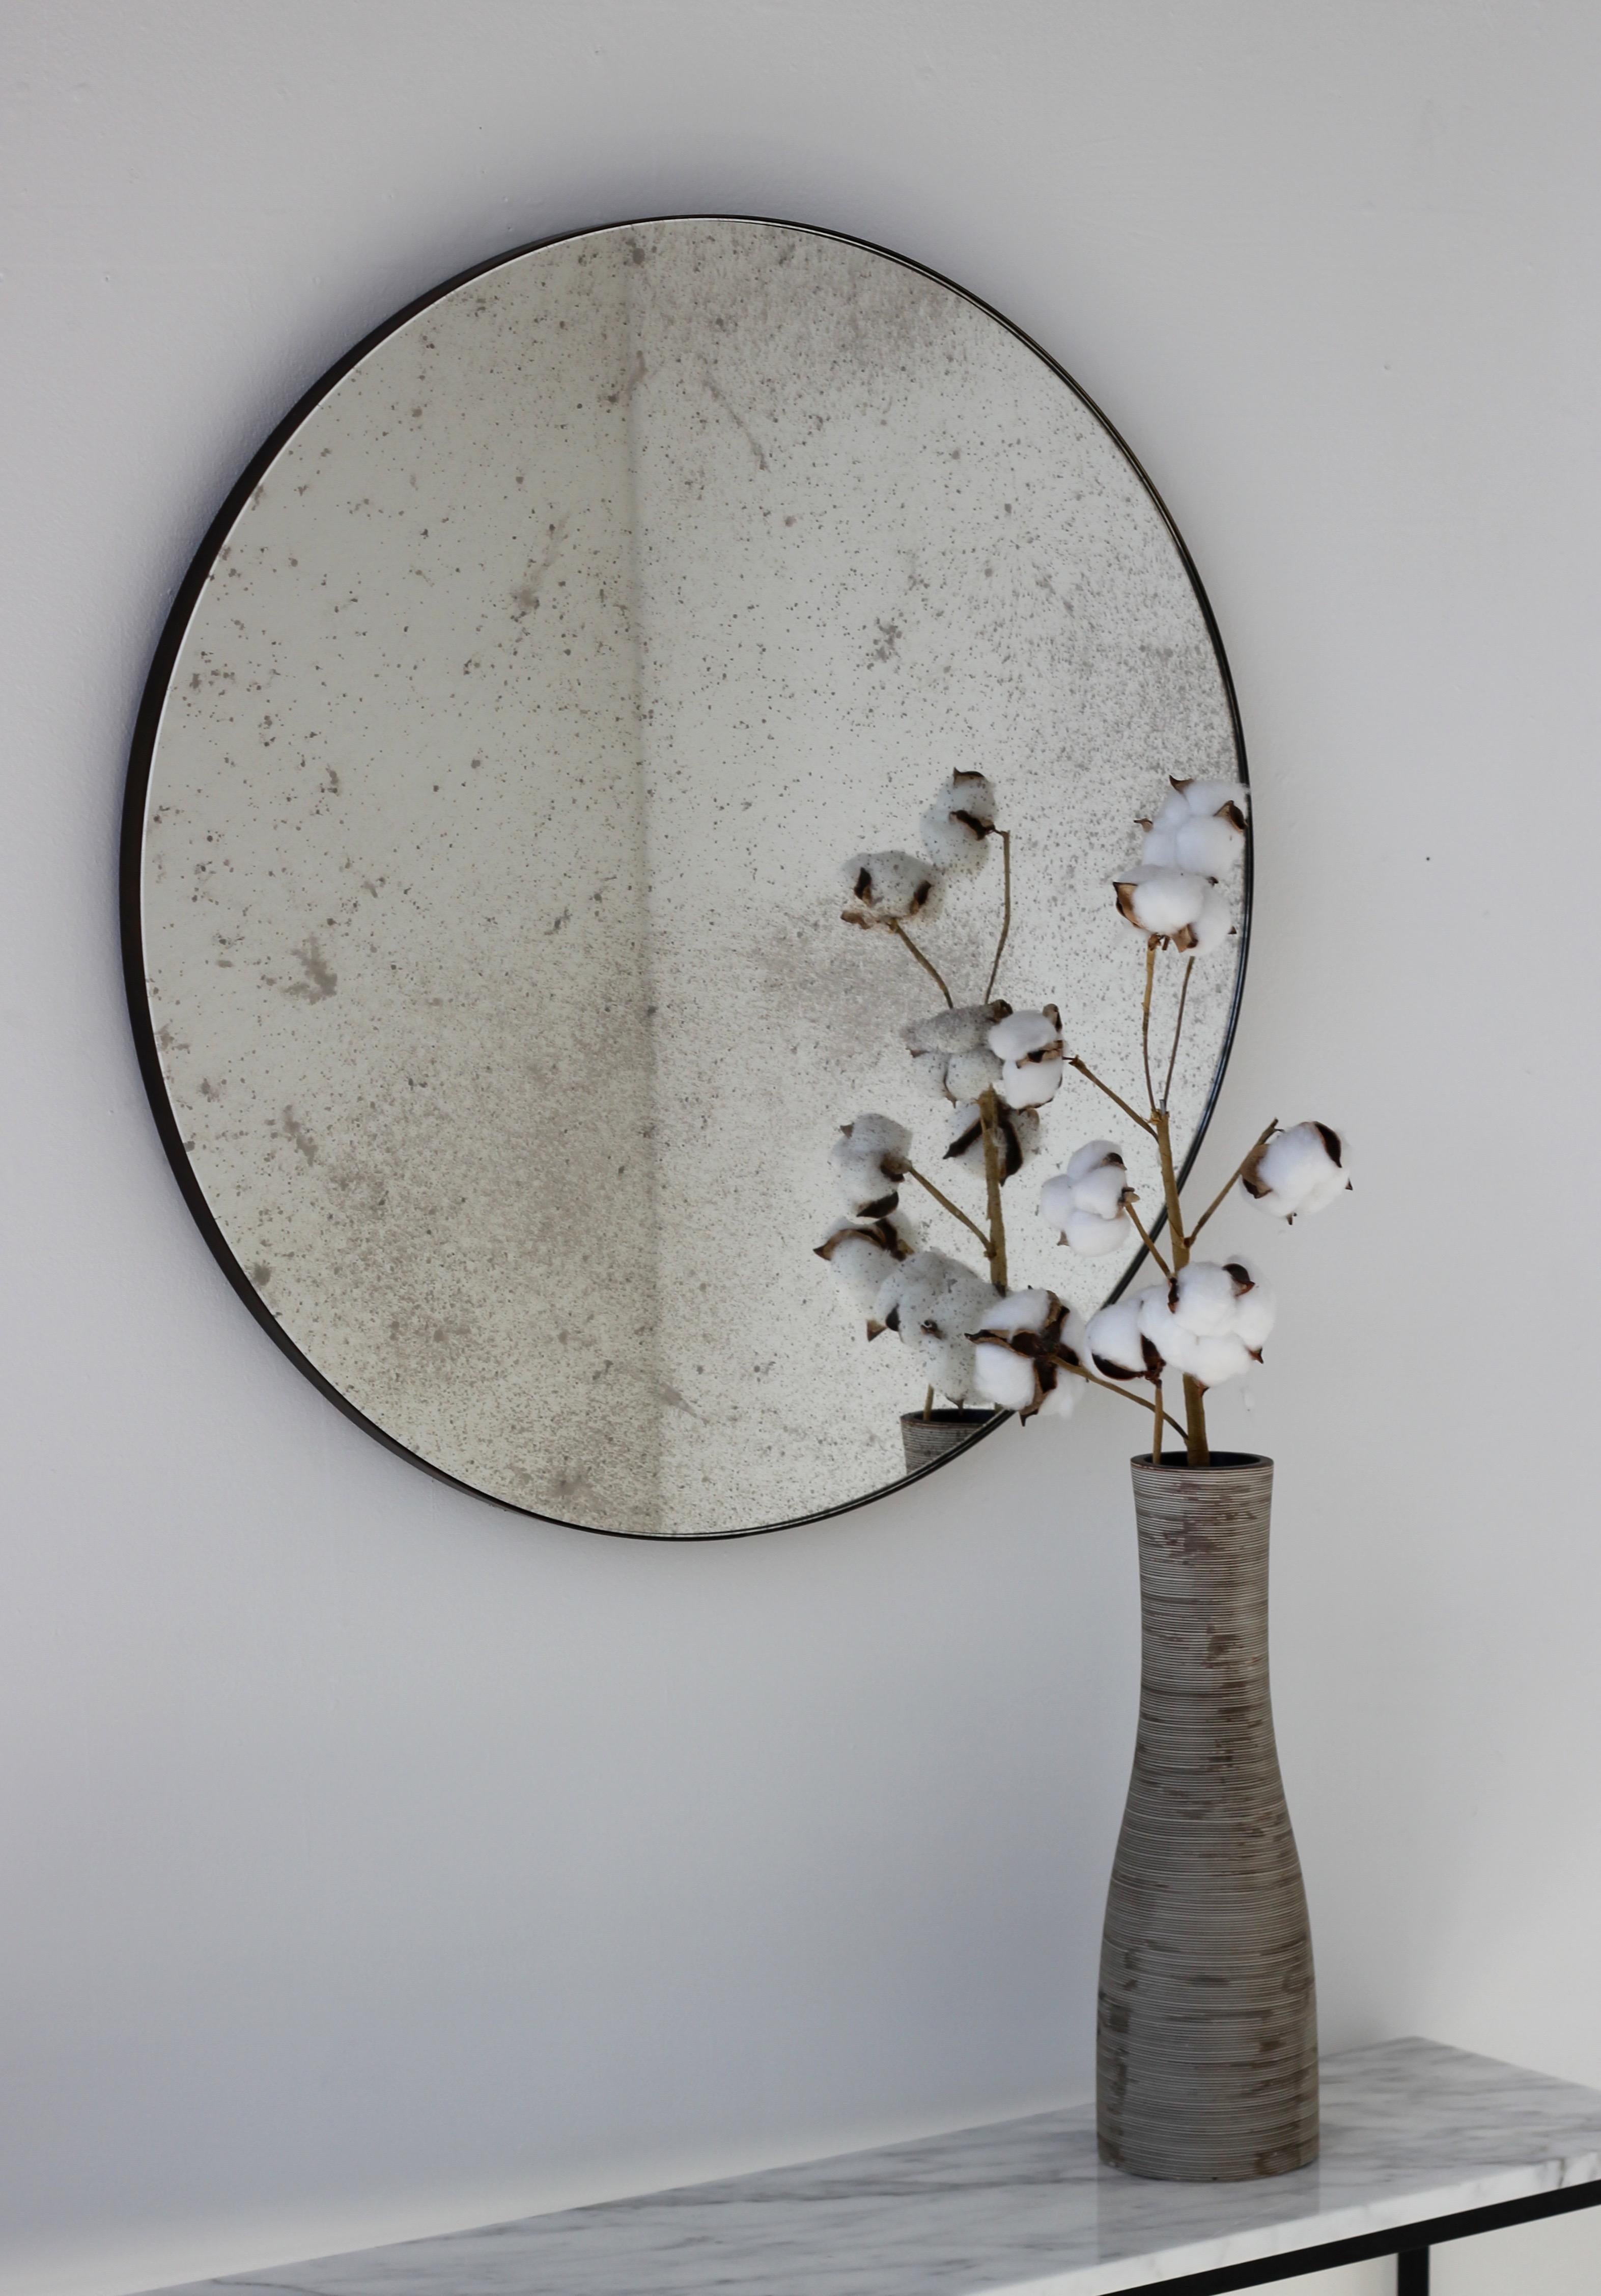 Schöner runder Orbis™-Spiegel in antikem Design mit einem minimalistischen Messingrahmen mit Bronzepatina. Entworfen und handgefertigt in London, UK.

Die mittelgroßen, großen und extragroßen Spiegel (60, 80 und 100 cm) sind mit einem ausgeklügelten